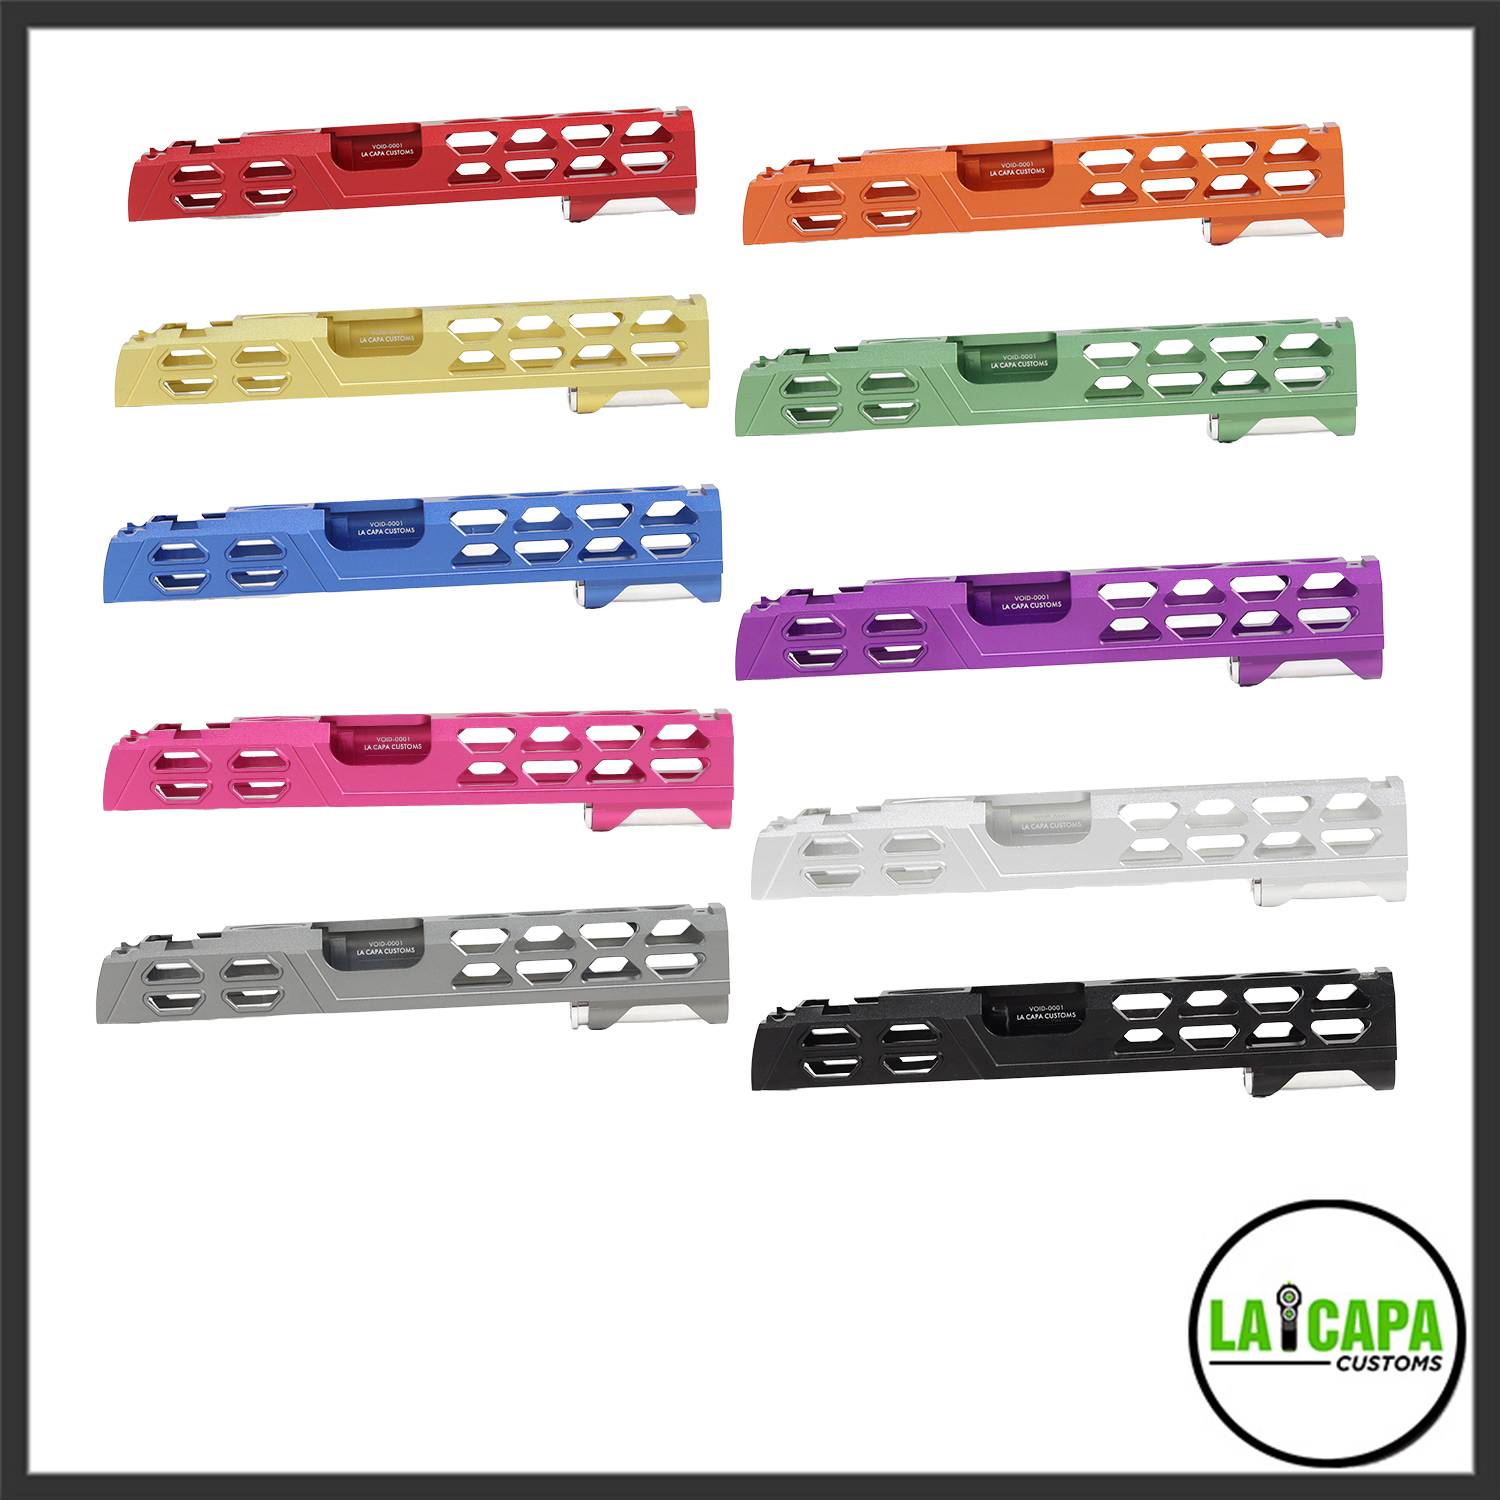 LA Capa Customs 5.1 “VOID” Aluminum Slide

- Purple